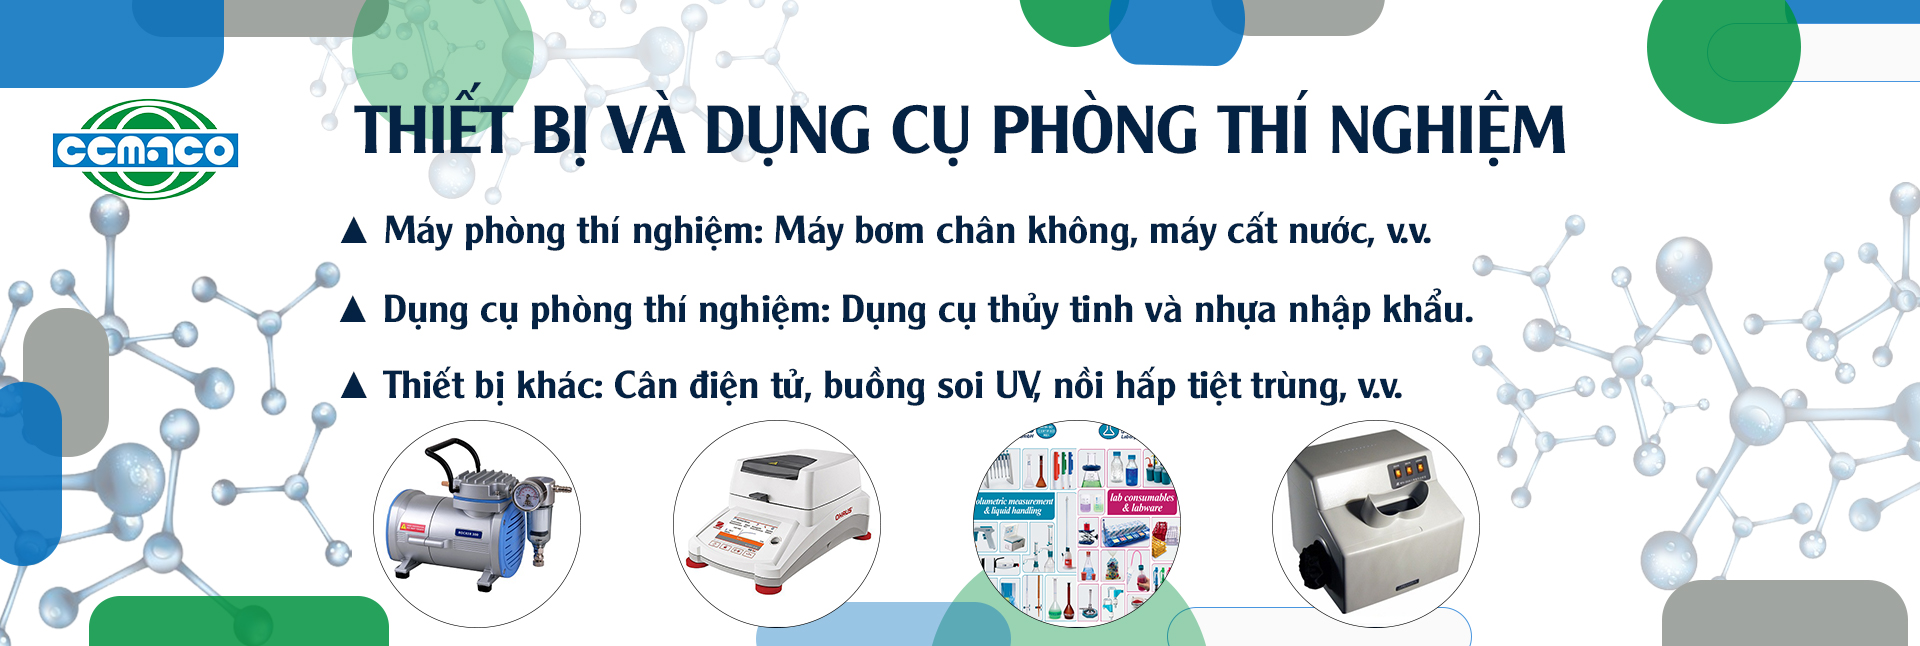 Công ty TNHH Cemaco Việt Nam tại Cần Thơ